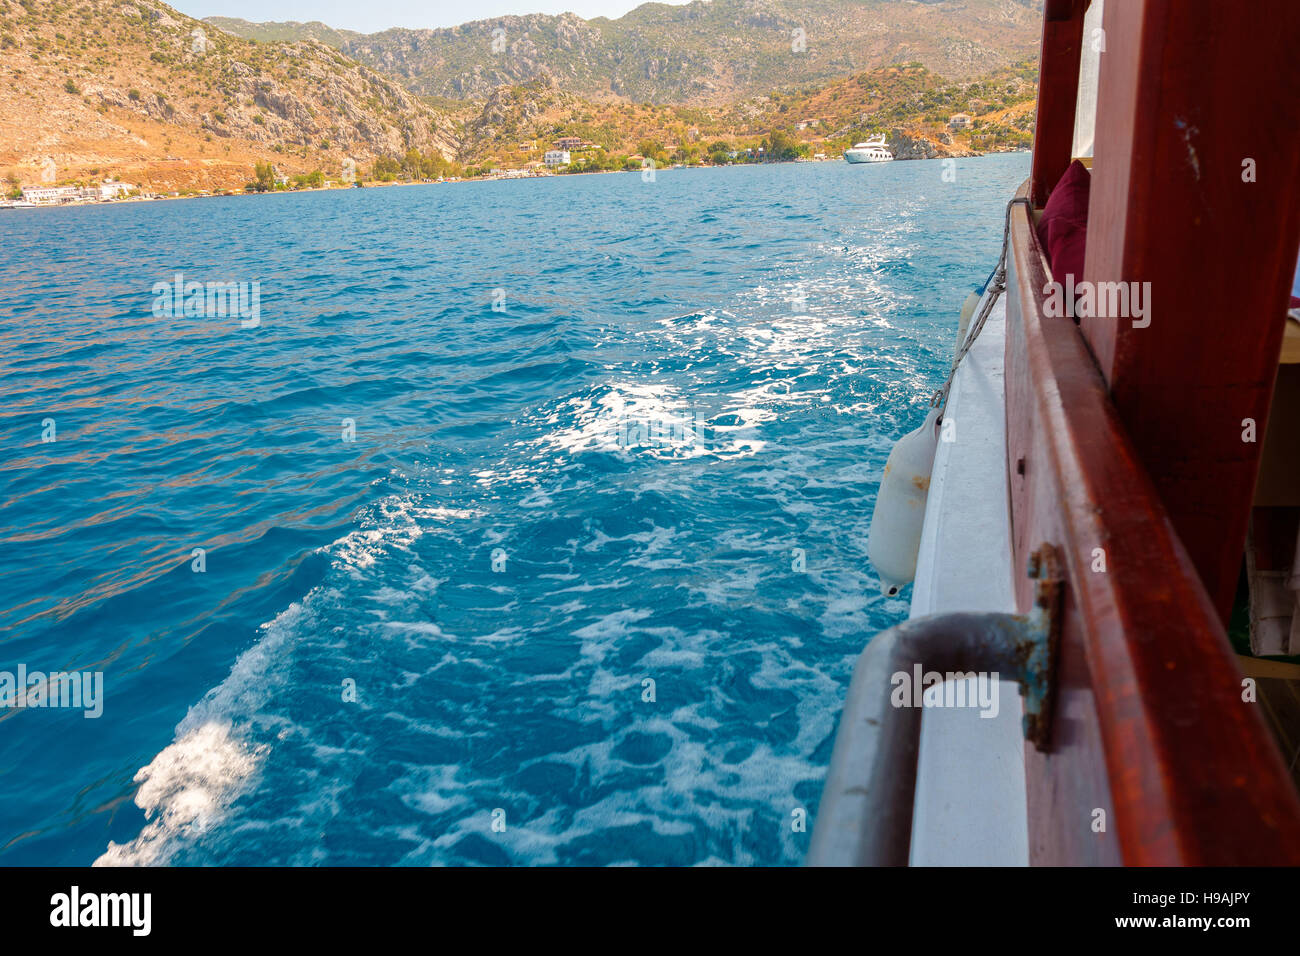 Lato di una barca sul mare sventola, Turchia Foto Stock